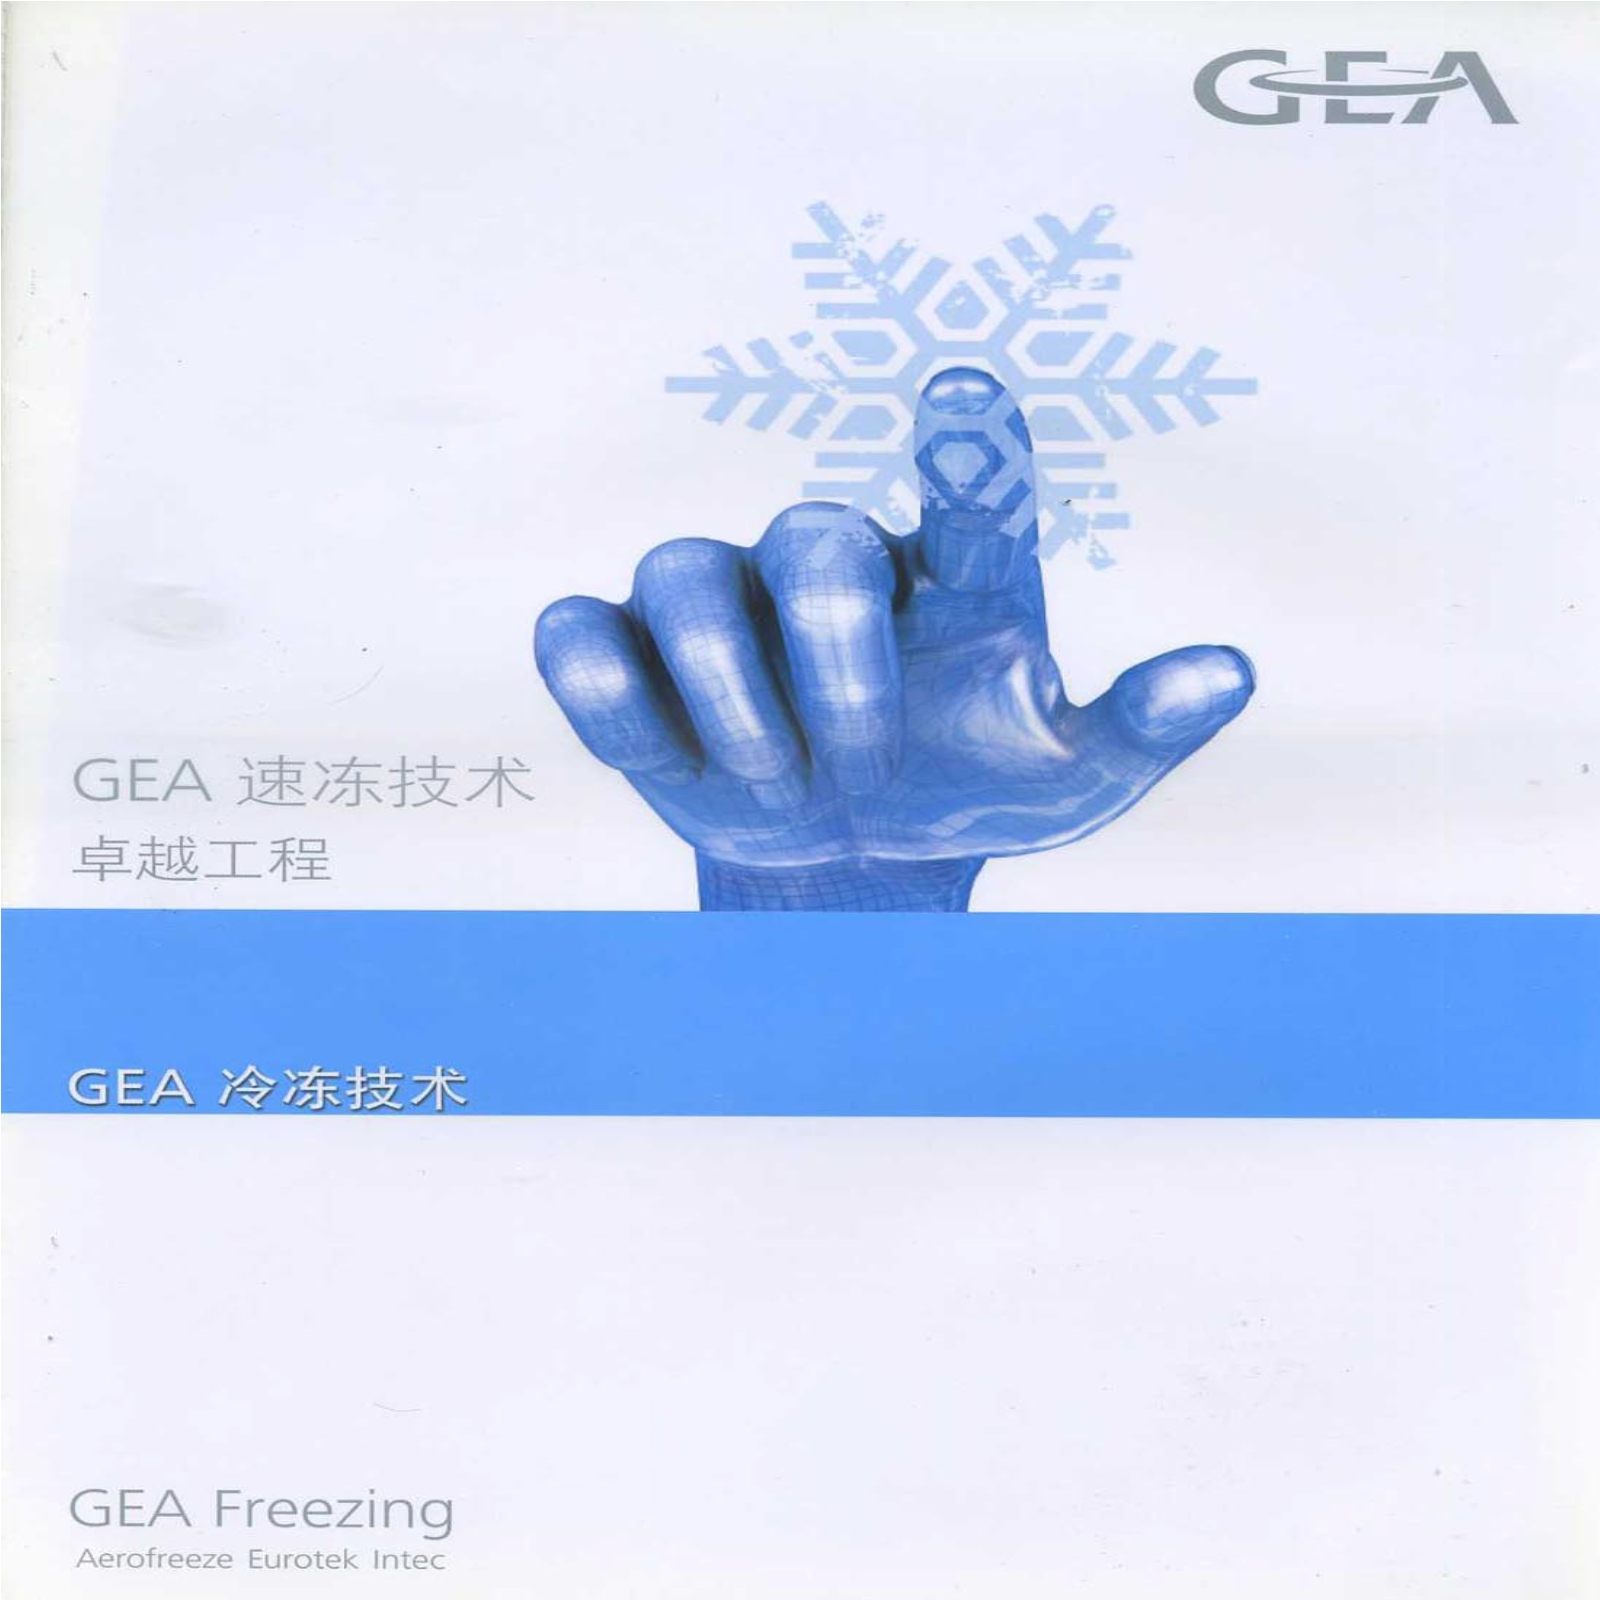 GEA冷冻技术